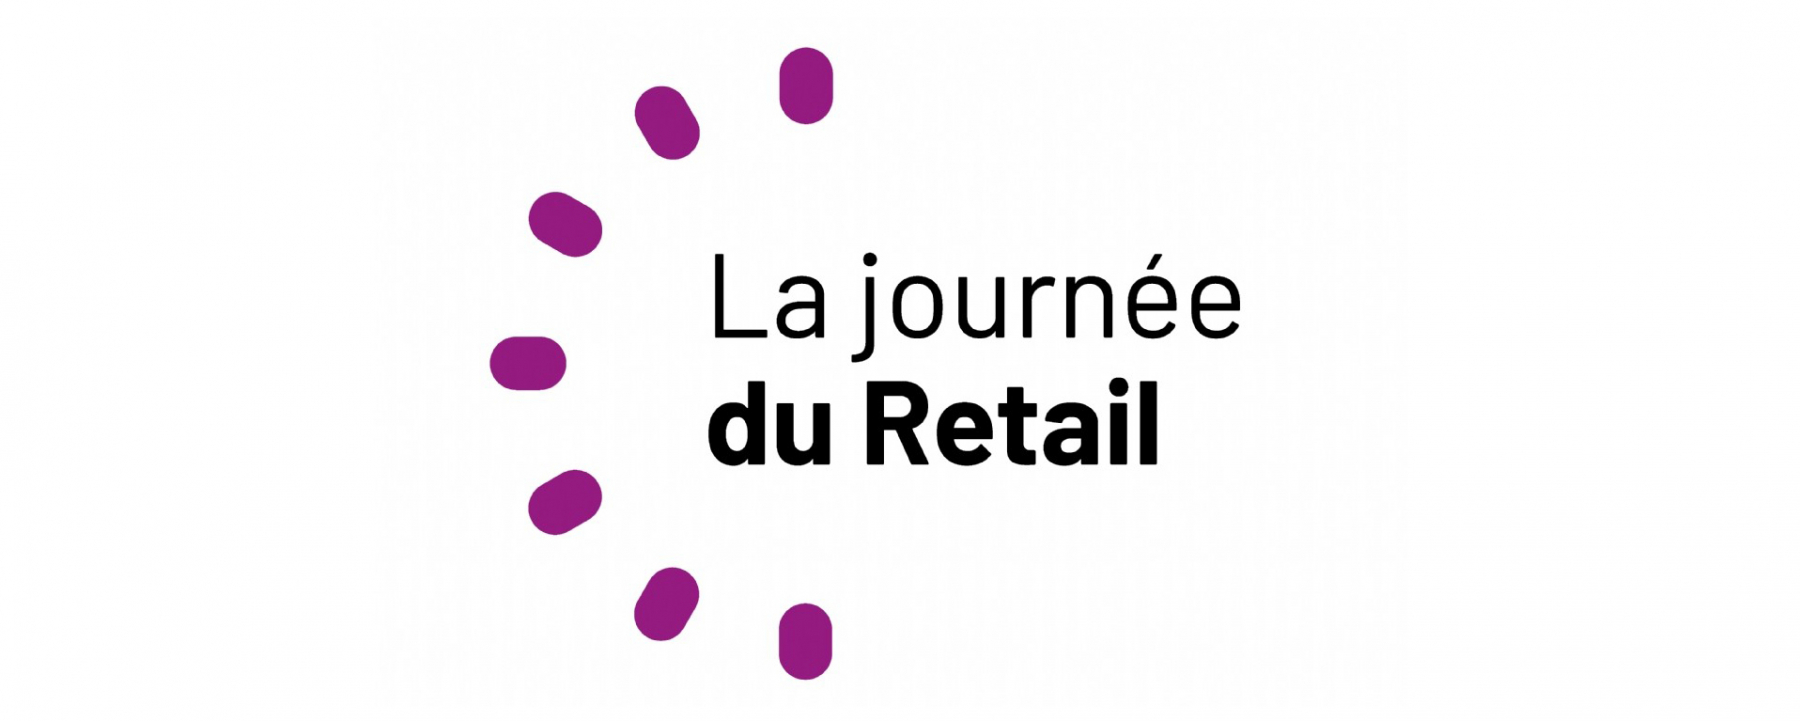 La journée du Retail, webconférences organisées par E-Marketing.fr, le 2 juillet 2020